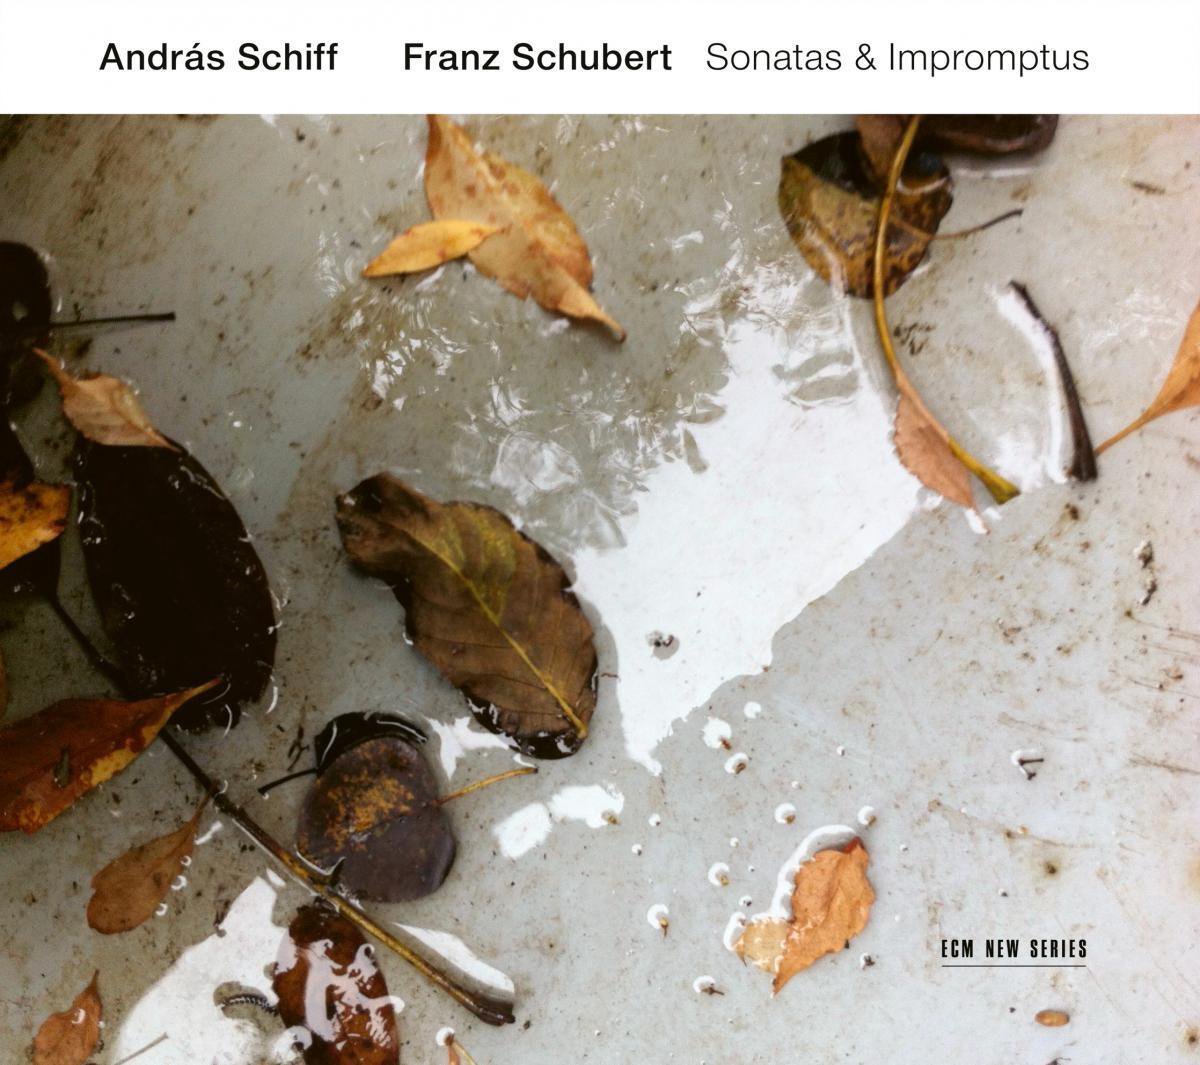 Sonatas & Impromptus | Andras Schiff